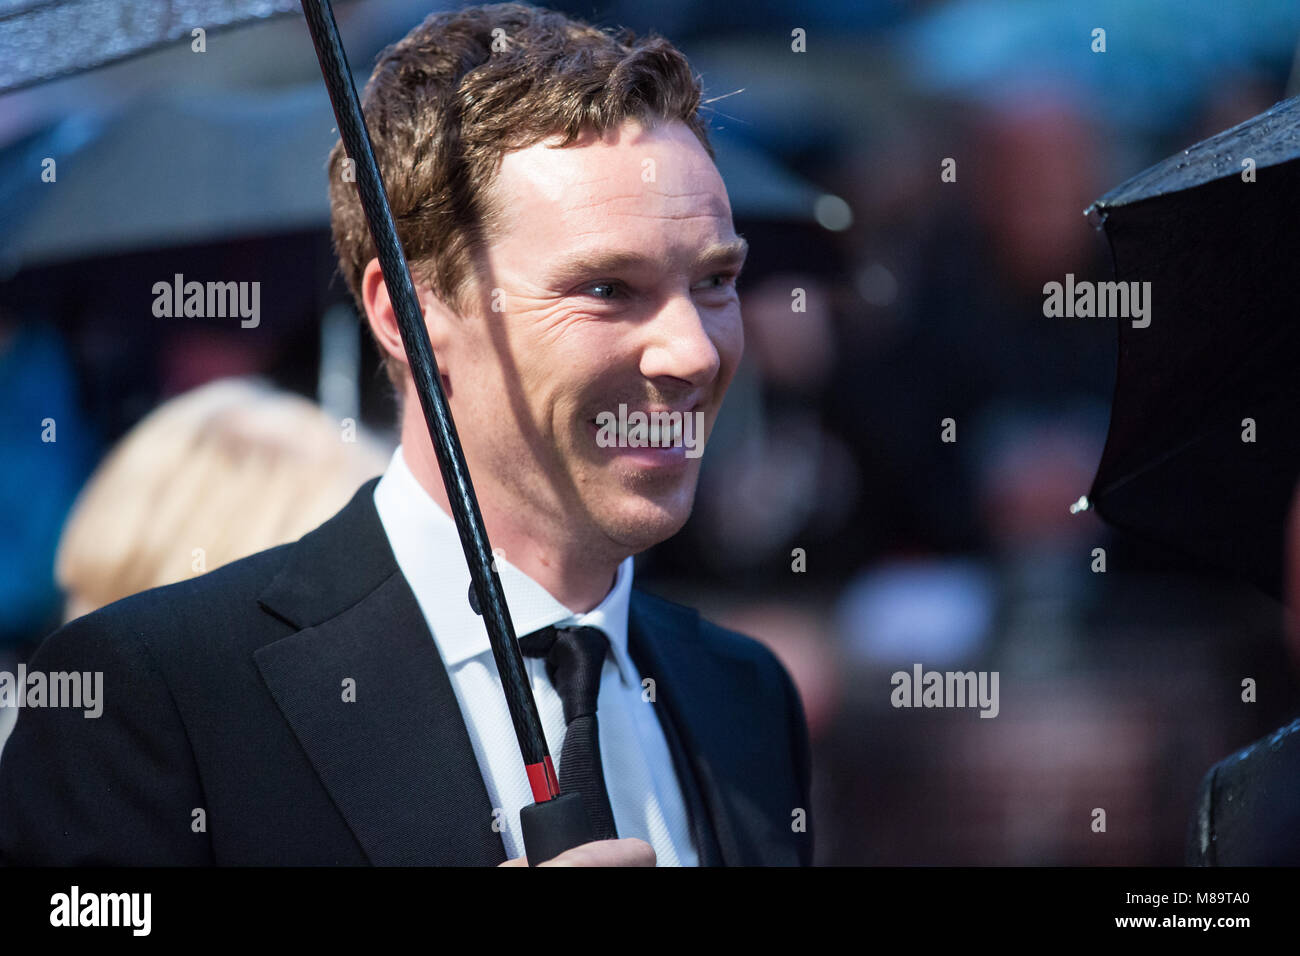 London, UK, 8 octobre 2014, Benedict Cumberbatch, 'l'Imitation Game' soirée d'ouverture du gala BFI London Film Festival. Mariusz Goslicki/Alamy Banque D'Images